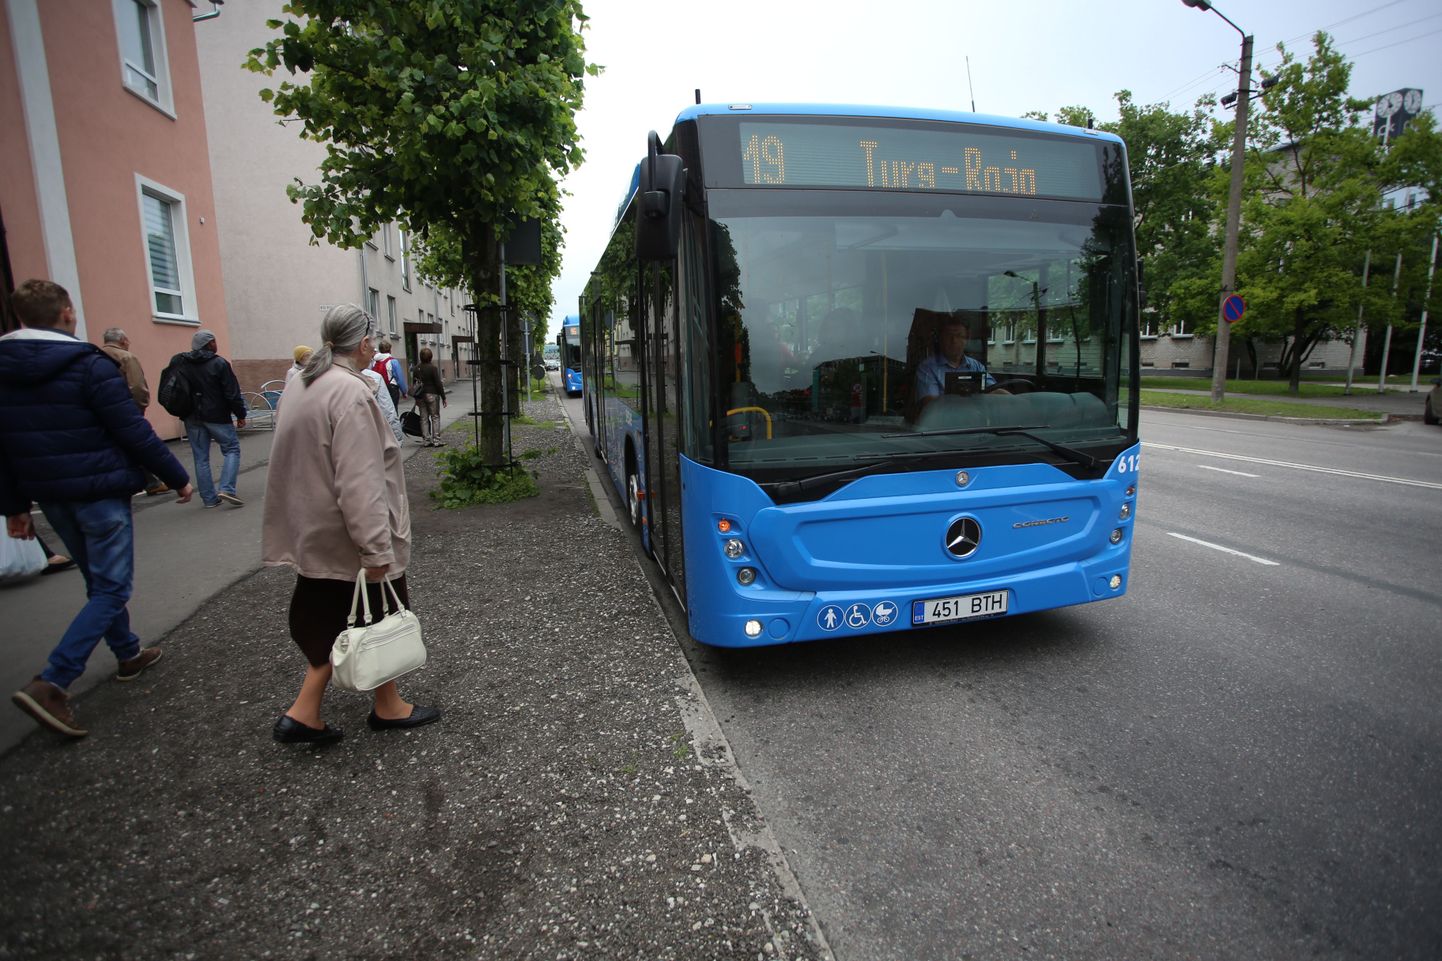 Täna hakkas Pärnu linnaliinidel ja lähiliinidel kehtima elektroonilisel bussikaardil põhinev piletisüsteem ja linnas sõitma uued helesinised valgete pärnaõitega dekoreeritud bussid.